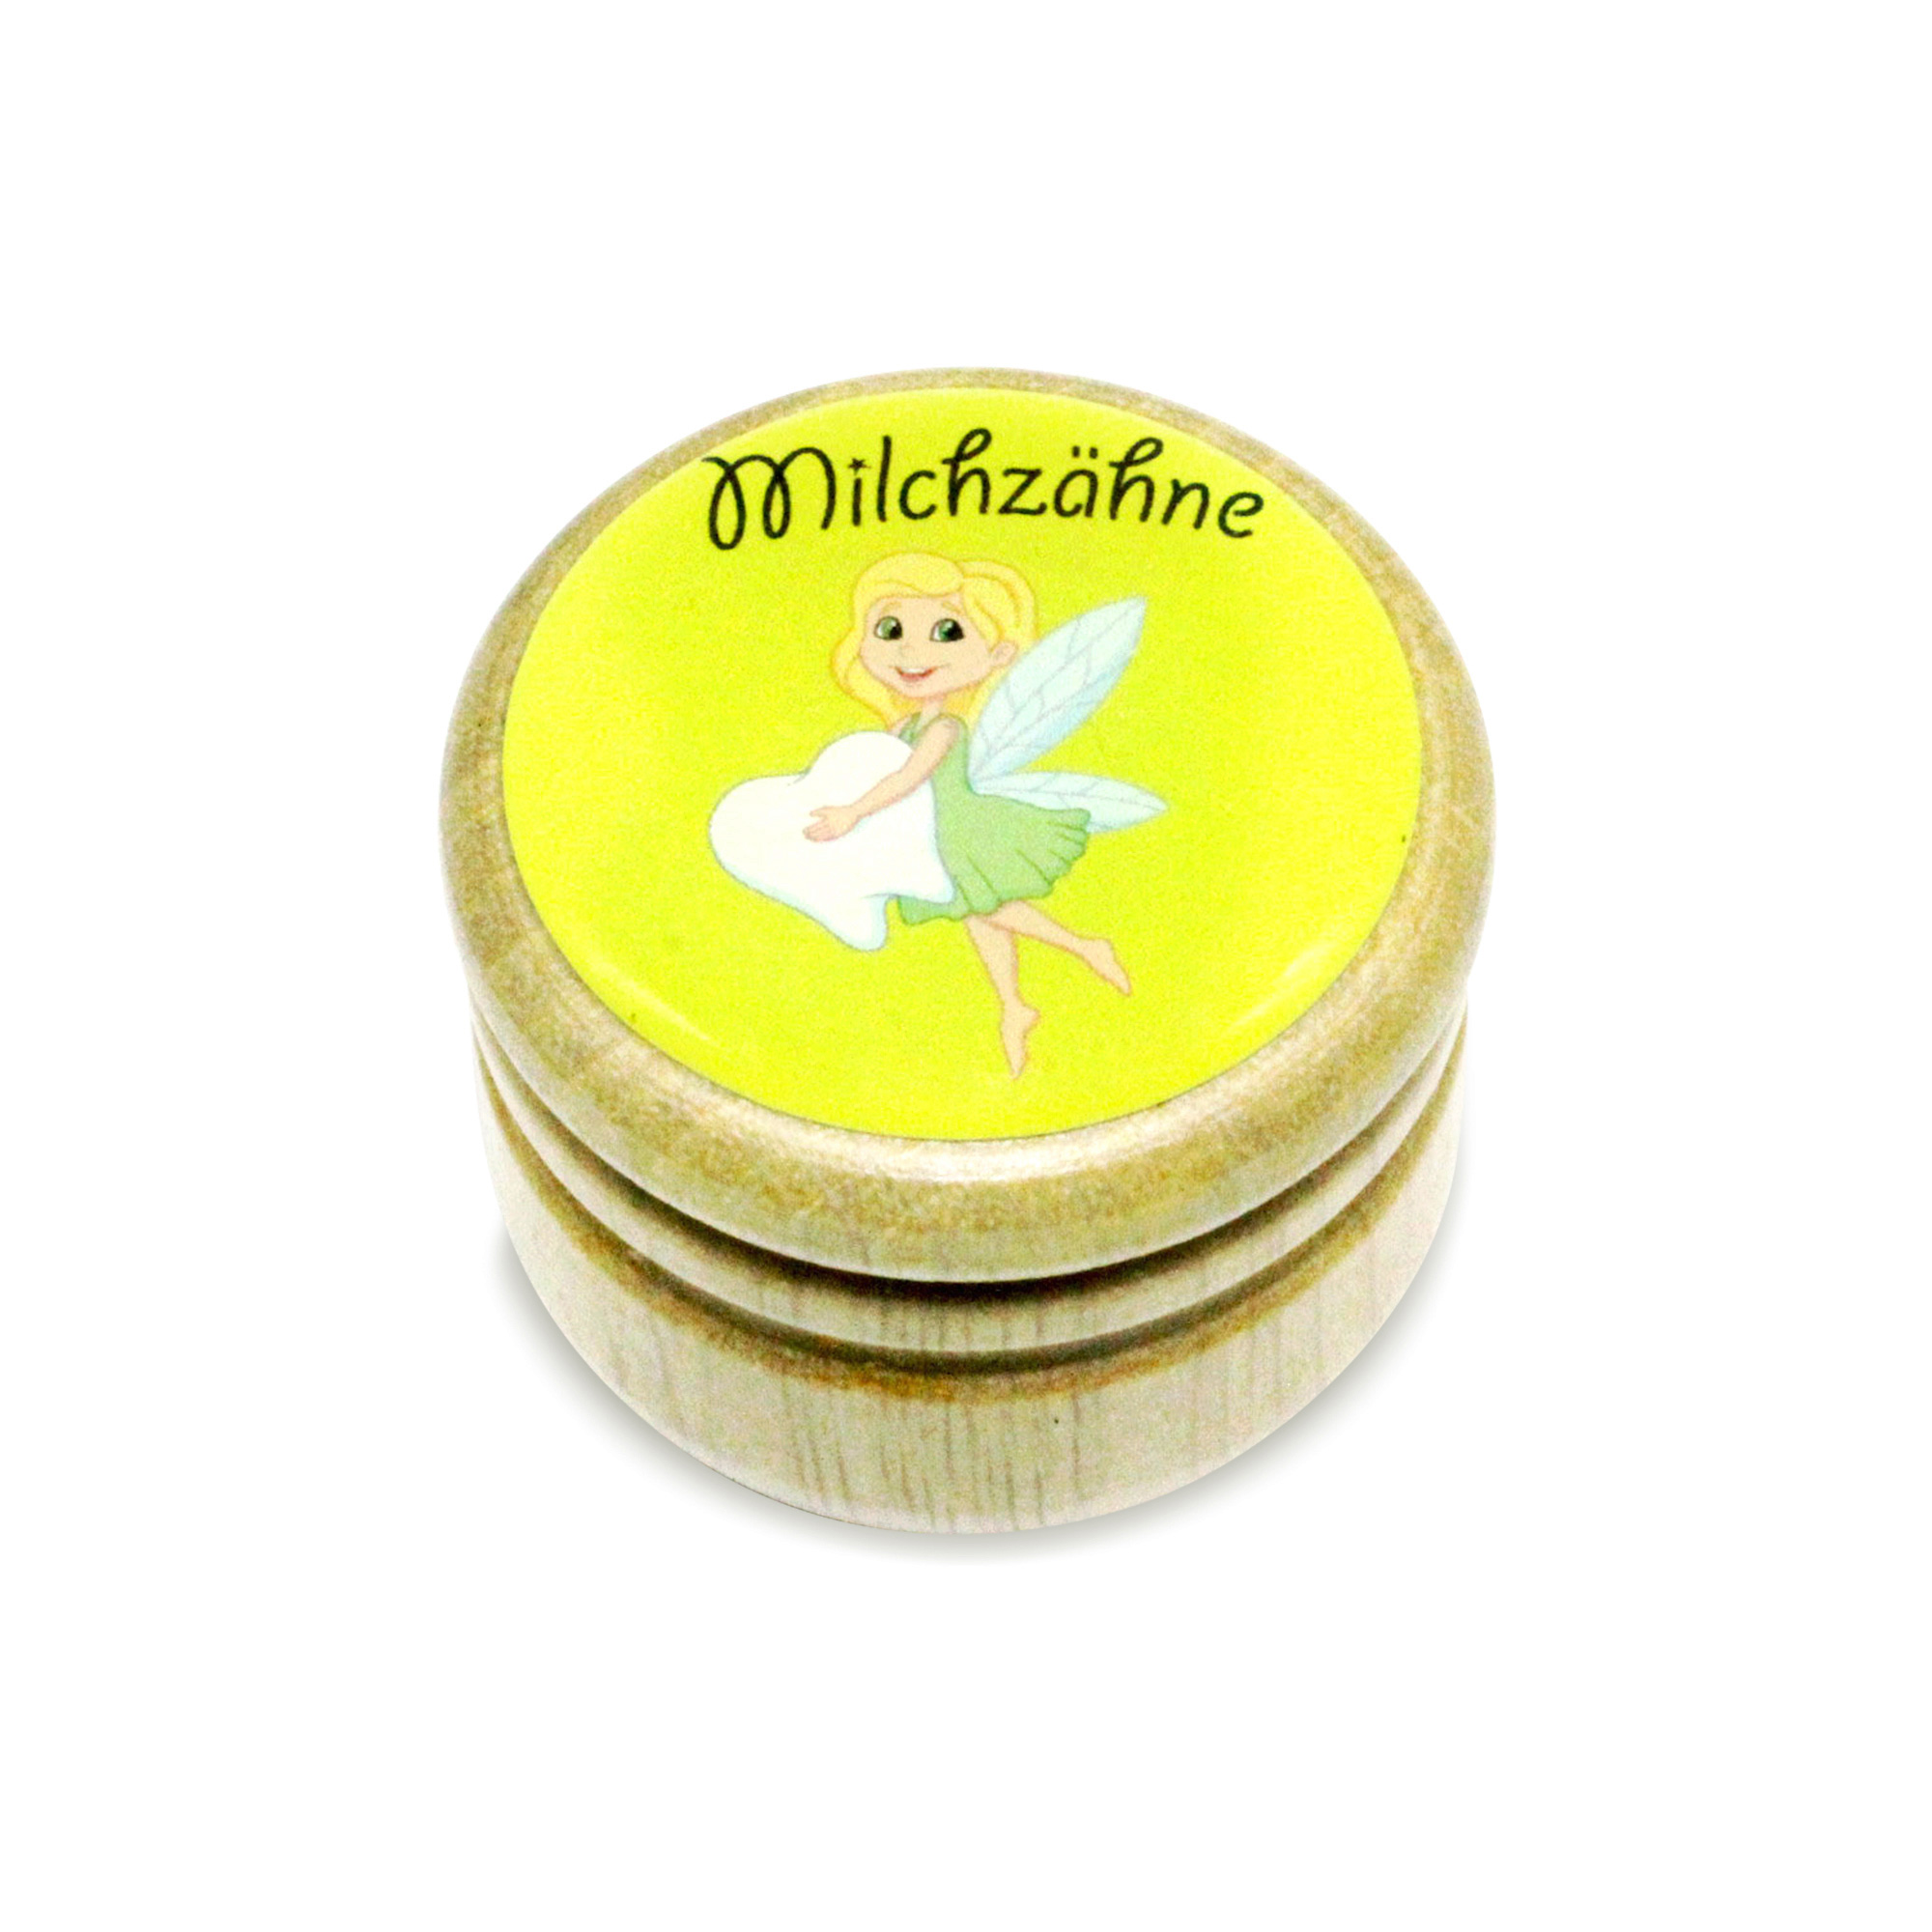 Milchzahndose Zahnfee Zahndose Milchzähne Bilderdose aus Holz mit Drehverschluss 44 mm ( Zahnfee ) - 7015